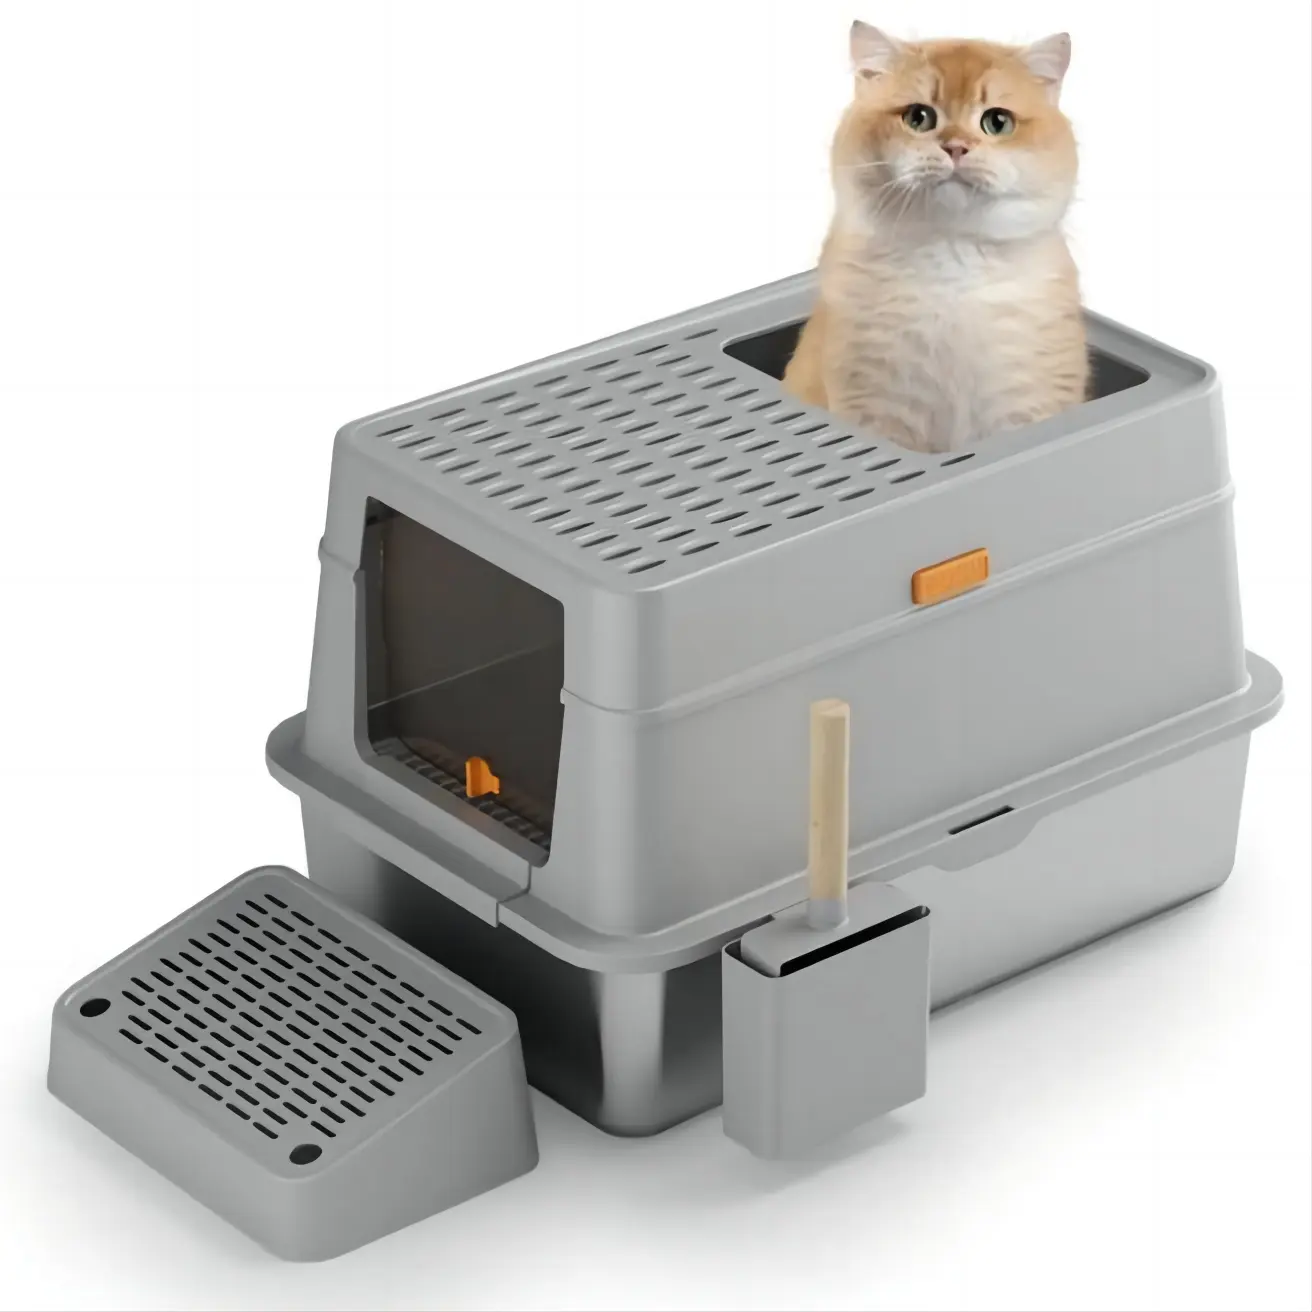 Sıcak satış kolay temizlik kapalı paslanmaz çelik kedi kum kabı büyük boy kaymaz kedi tuvalet kutusu